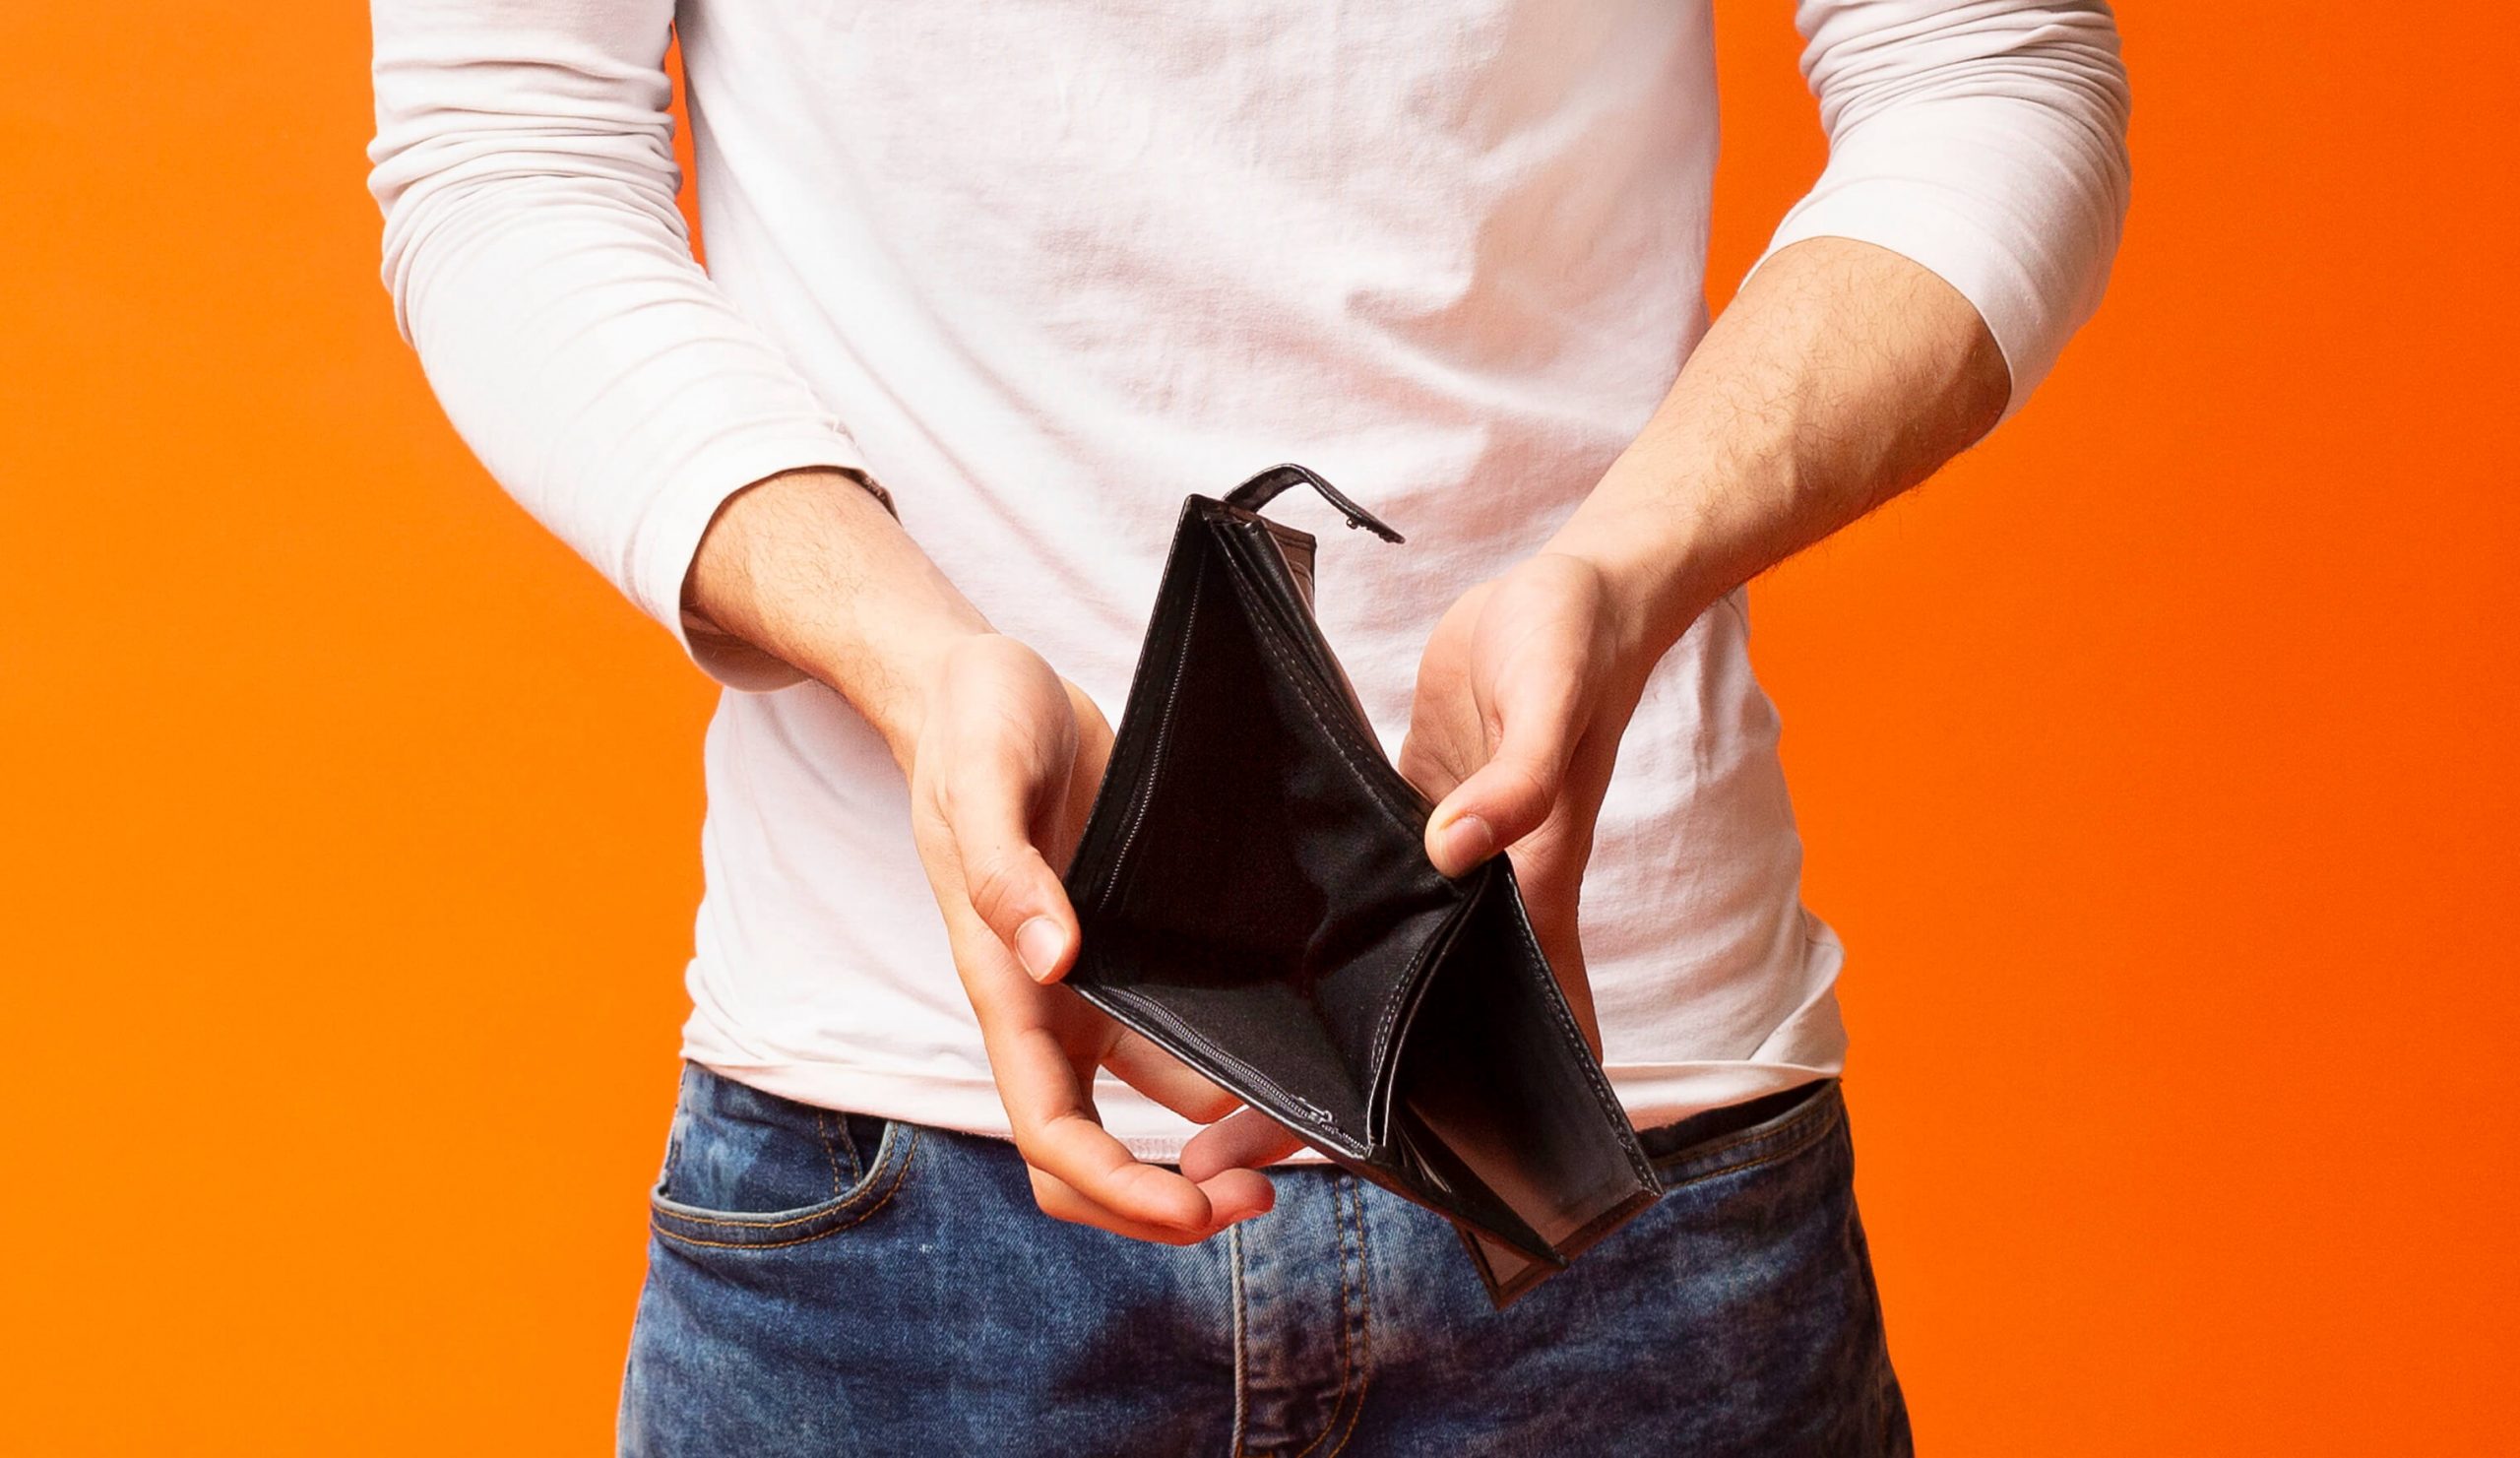 Aqui vemos um homem segurando uma carteira sem dinheiro dentro. Ele está usando calça jeans, camisa branca e o fundo da foto é laranja